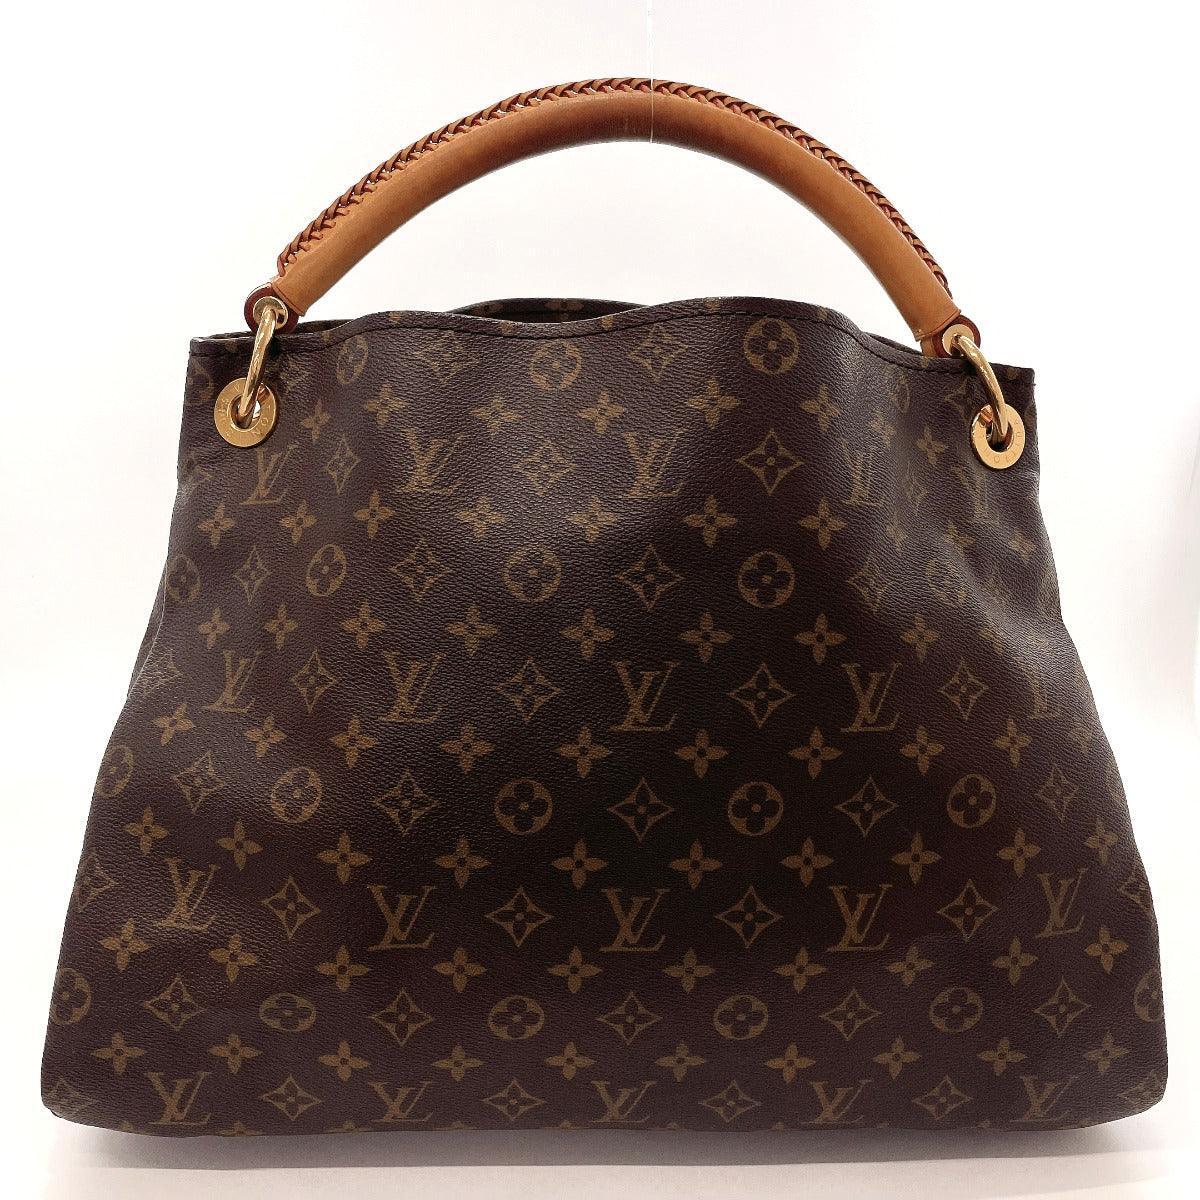 Louis Vuitton Louis Vuitton Artsy Large Bags & Handbags for Women